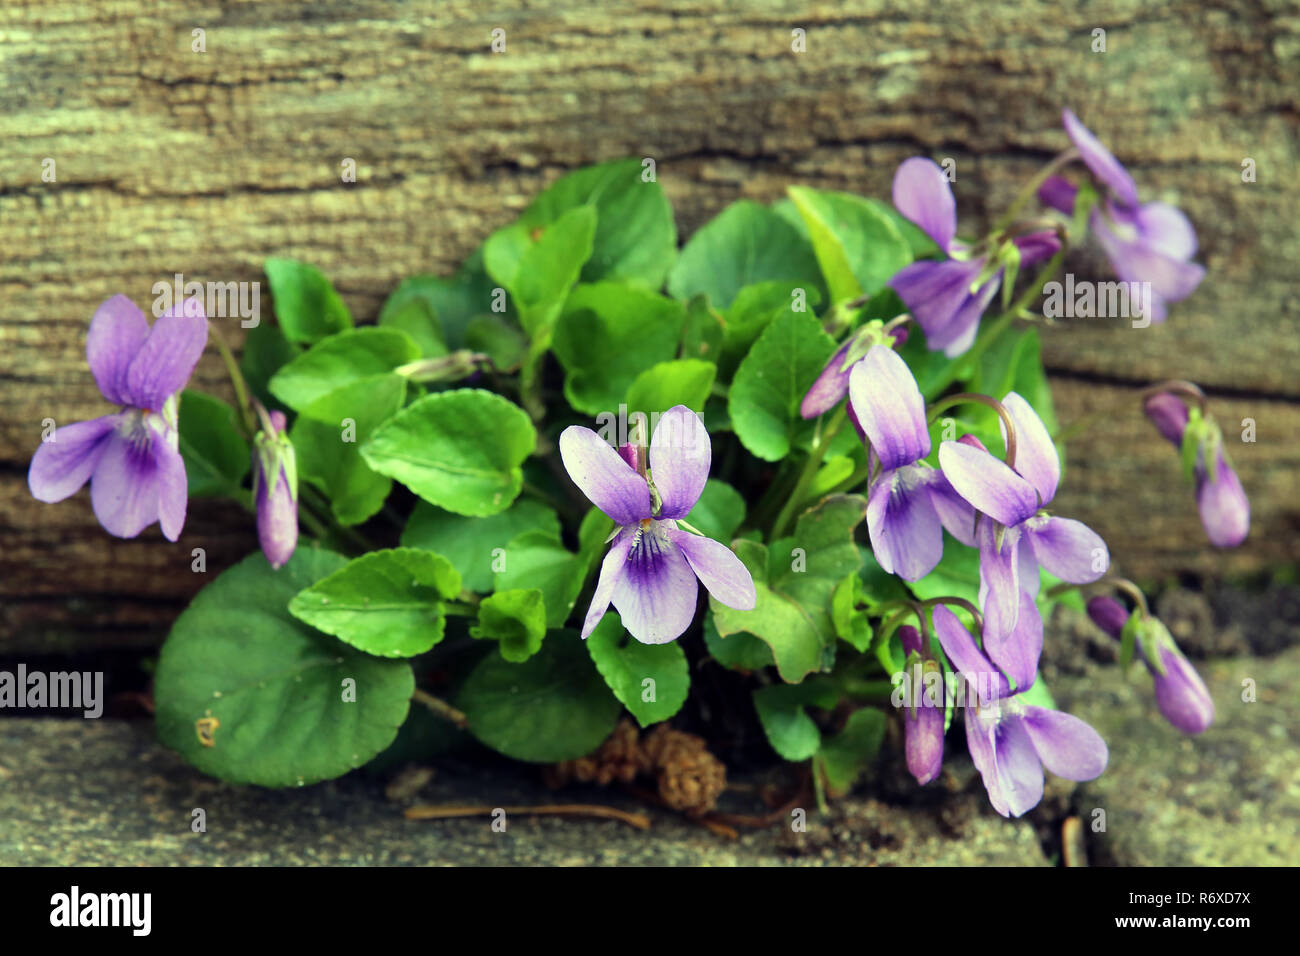 fragrant violet viola odorata in the natural garden Stock Photo